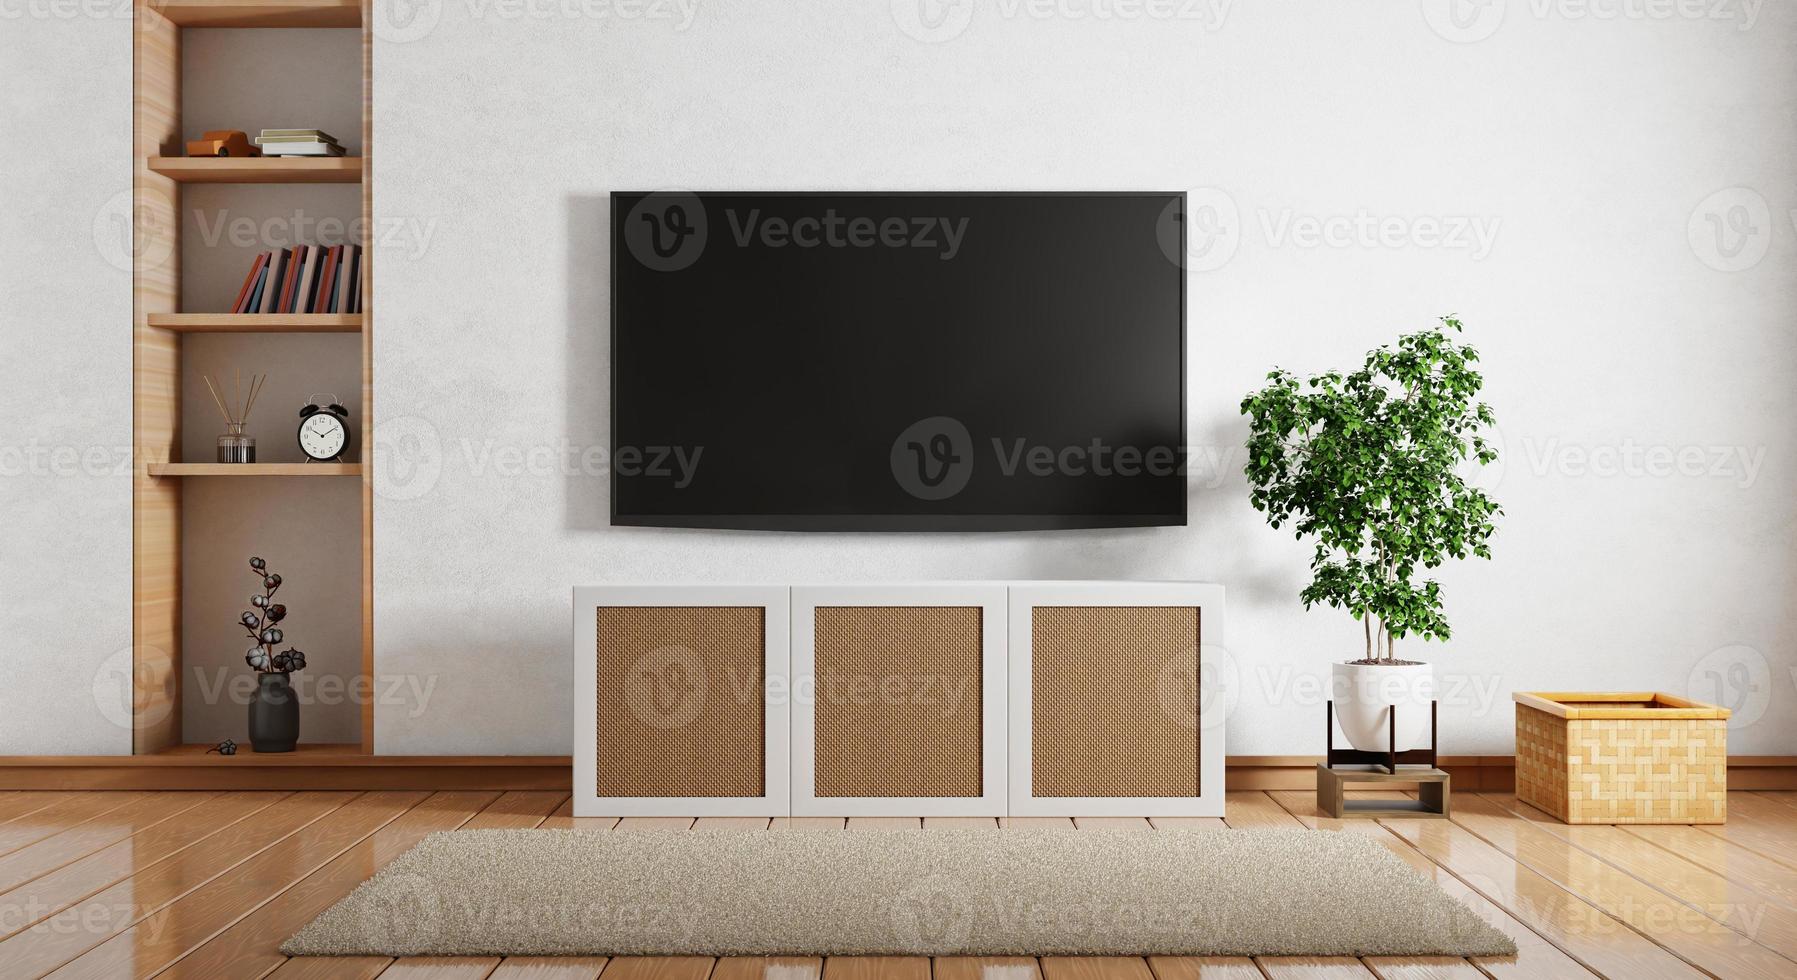 tv boven houten kast in moderne lege ruimte met boekenplank boek planten mand en tapijt op houten vloer. architectuur en interieurconcept. 3D illustratie weergave foto